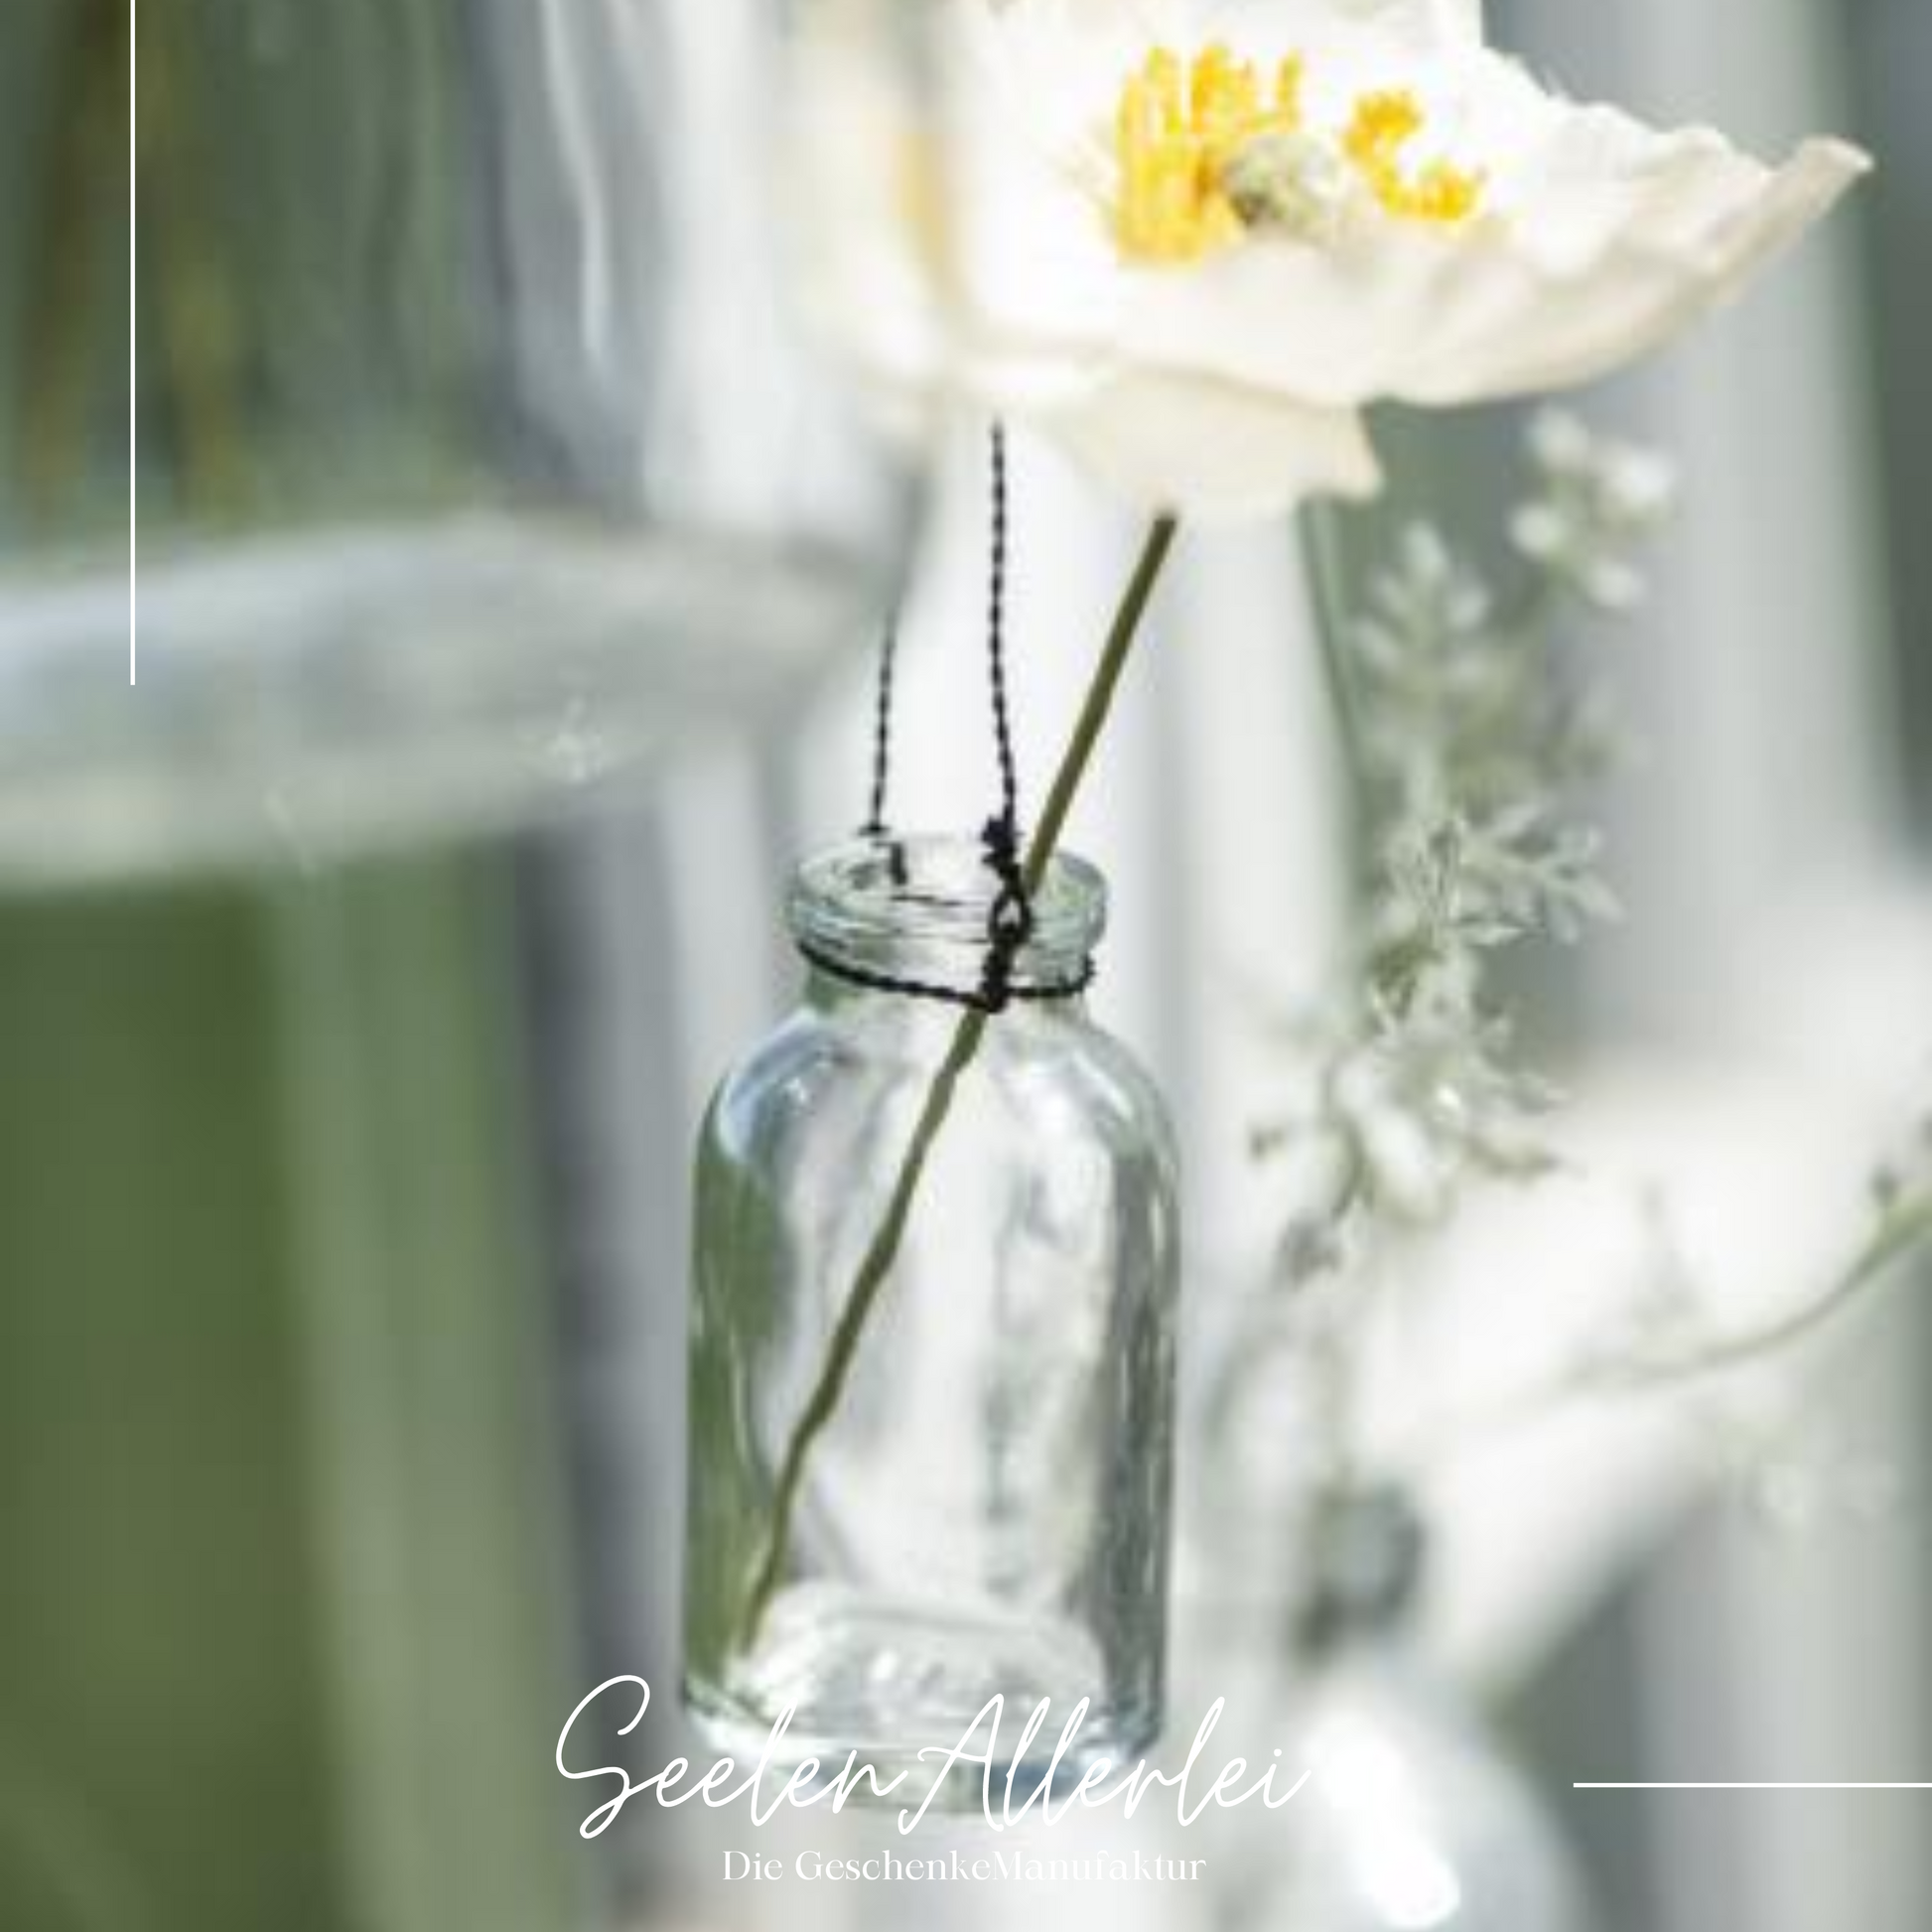 Glasflasche mit einer weißen Anemone-Blüte hängt im Fenster